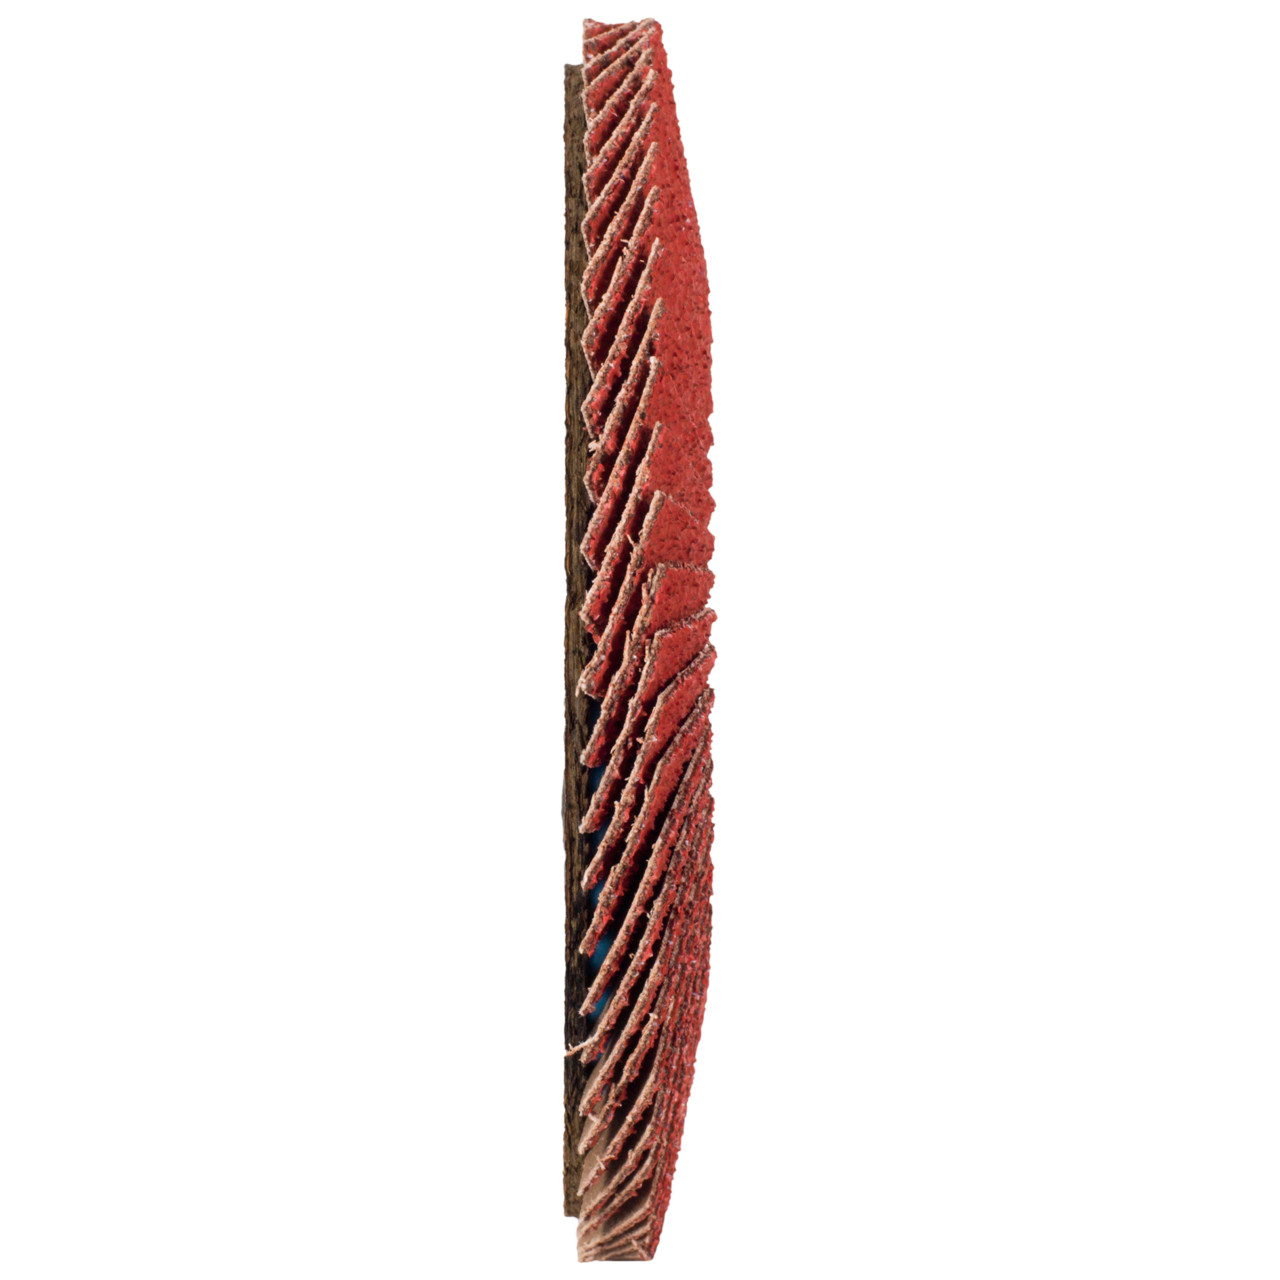 Tyrolit Rondelle éventail DxH 178x22,23 CERABOND Rondelle éventail pour acier inoxydable, P60, forme : 28A - modèle droit (modèle à corps en fibre de verre), Art. 34166182